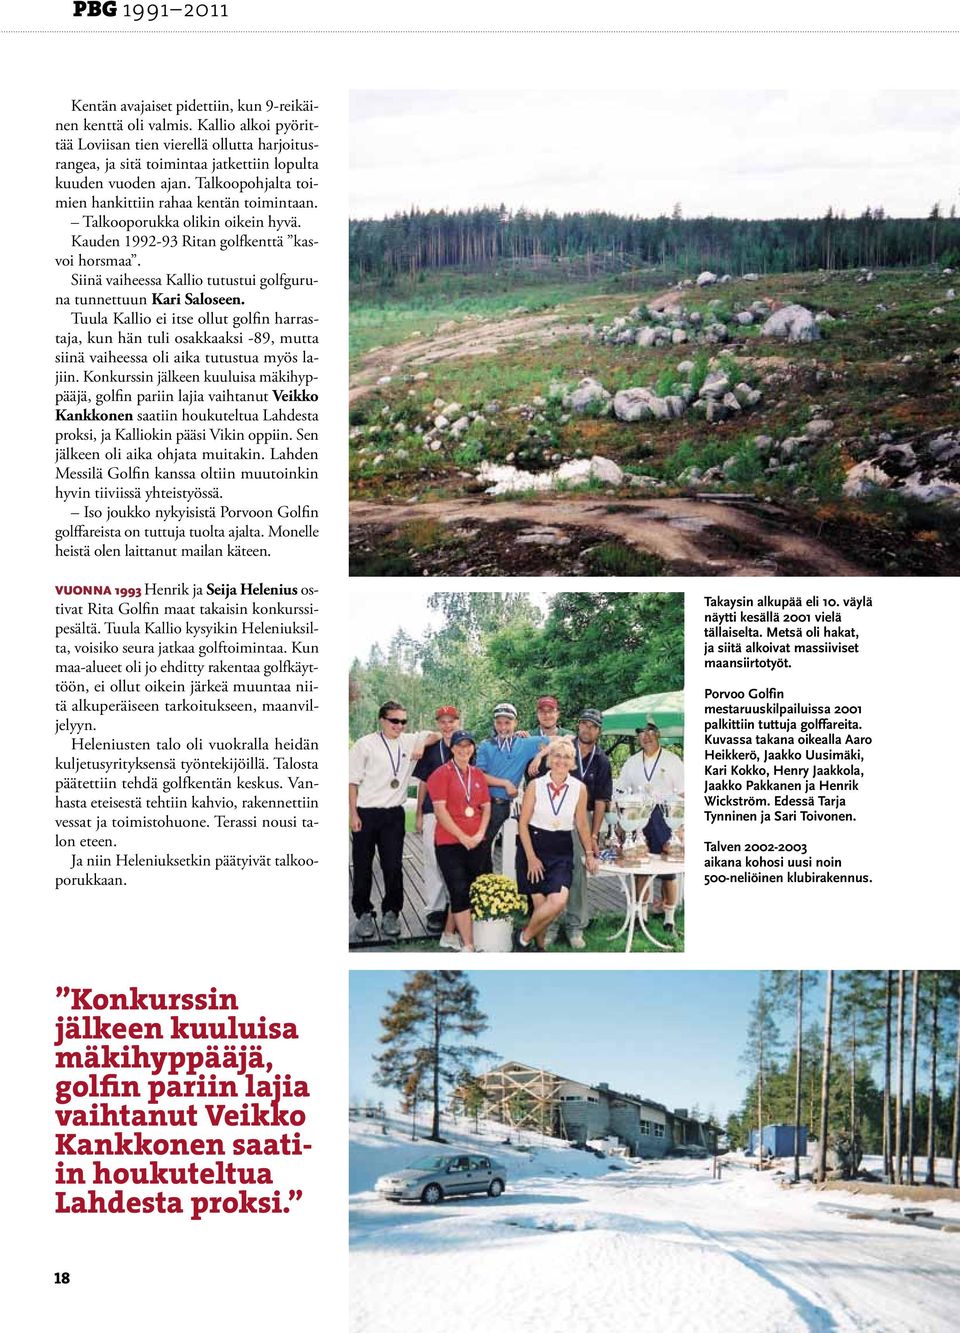 Talkooporukka olikin oikein hyvä. Kauden 1992-93 Ritan golfkenttä kasvoi horsmaa. Siinä vaiheessa Kallio tutustui golfguruna tunnettuun Kari Saloseen.